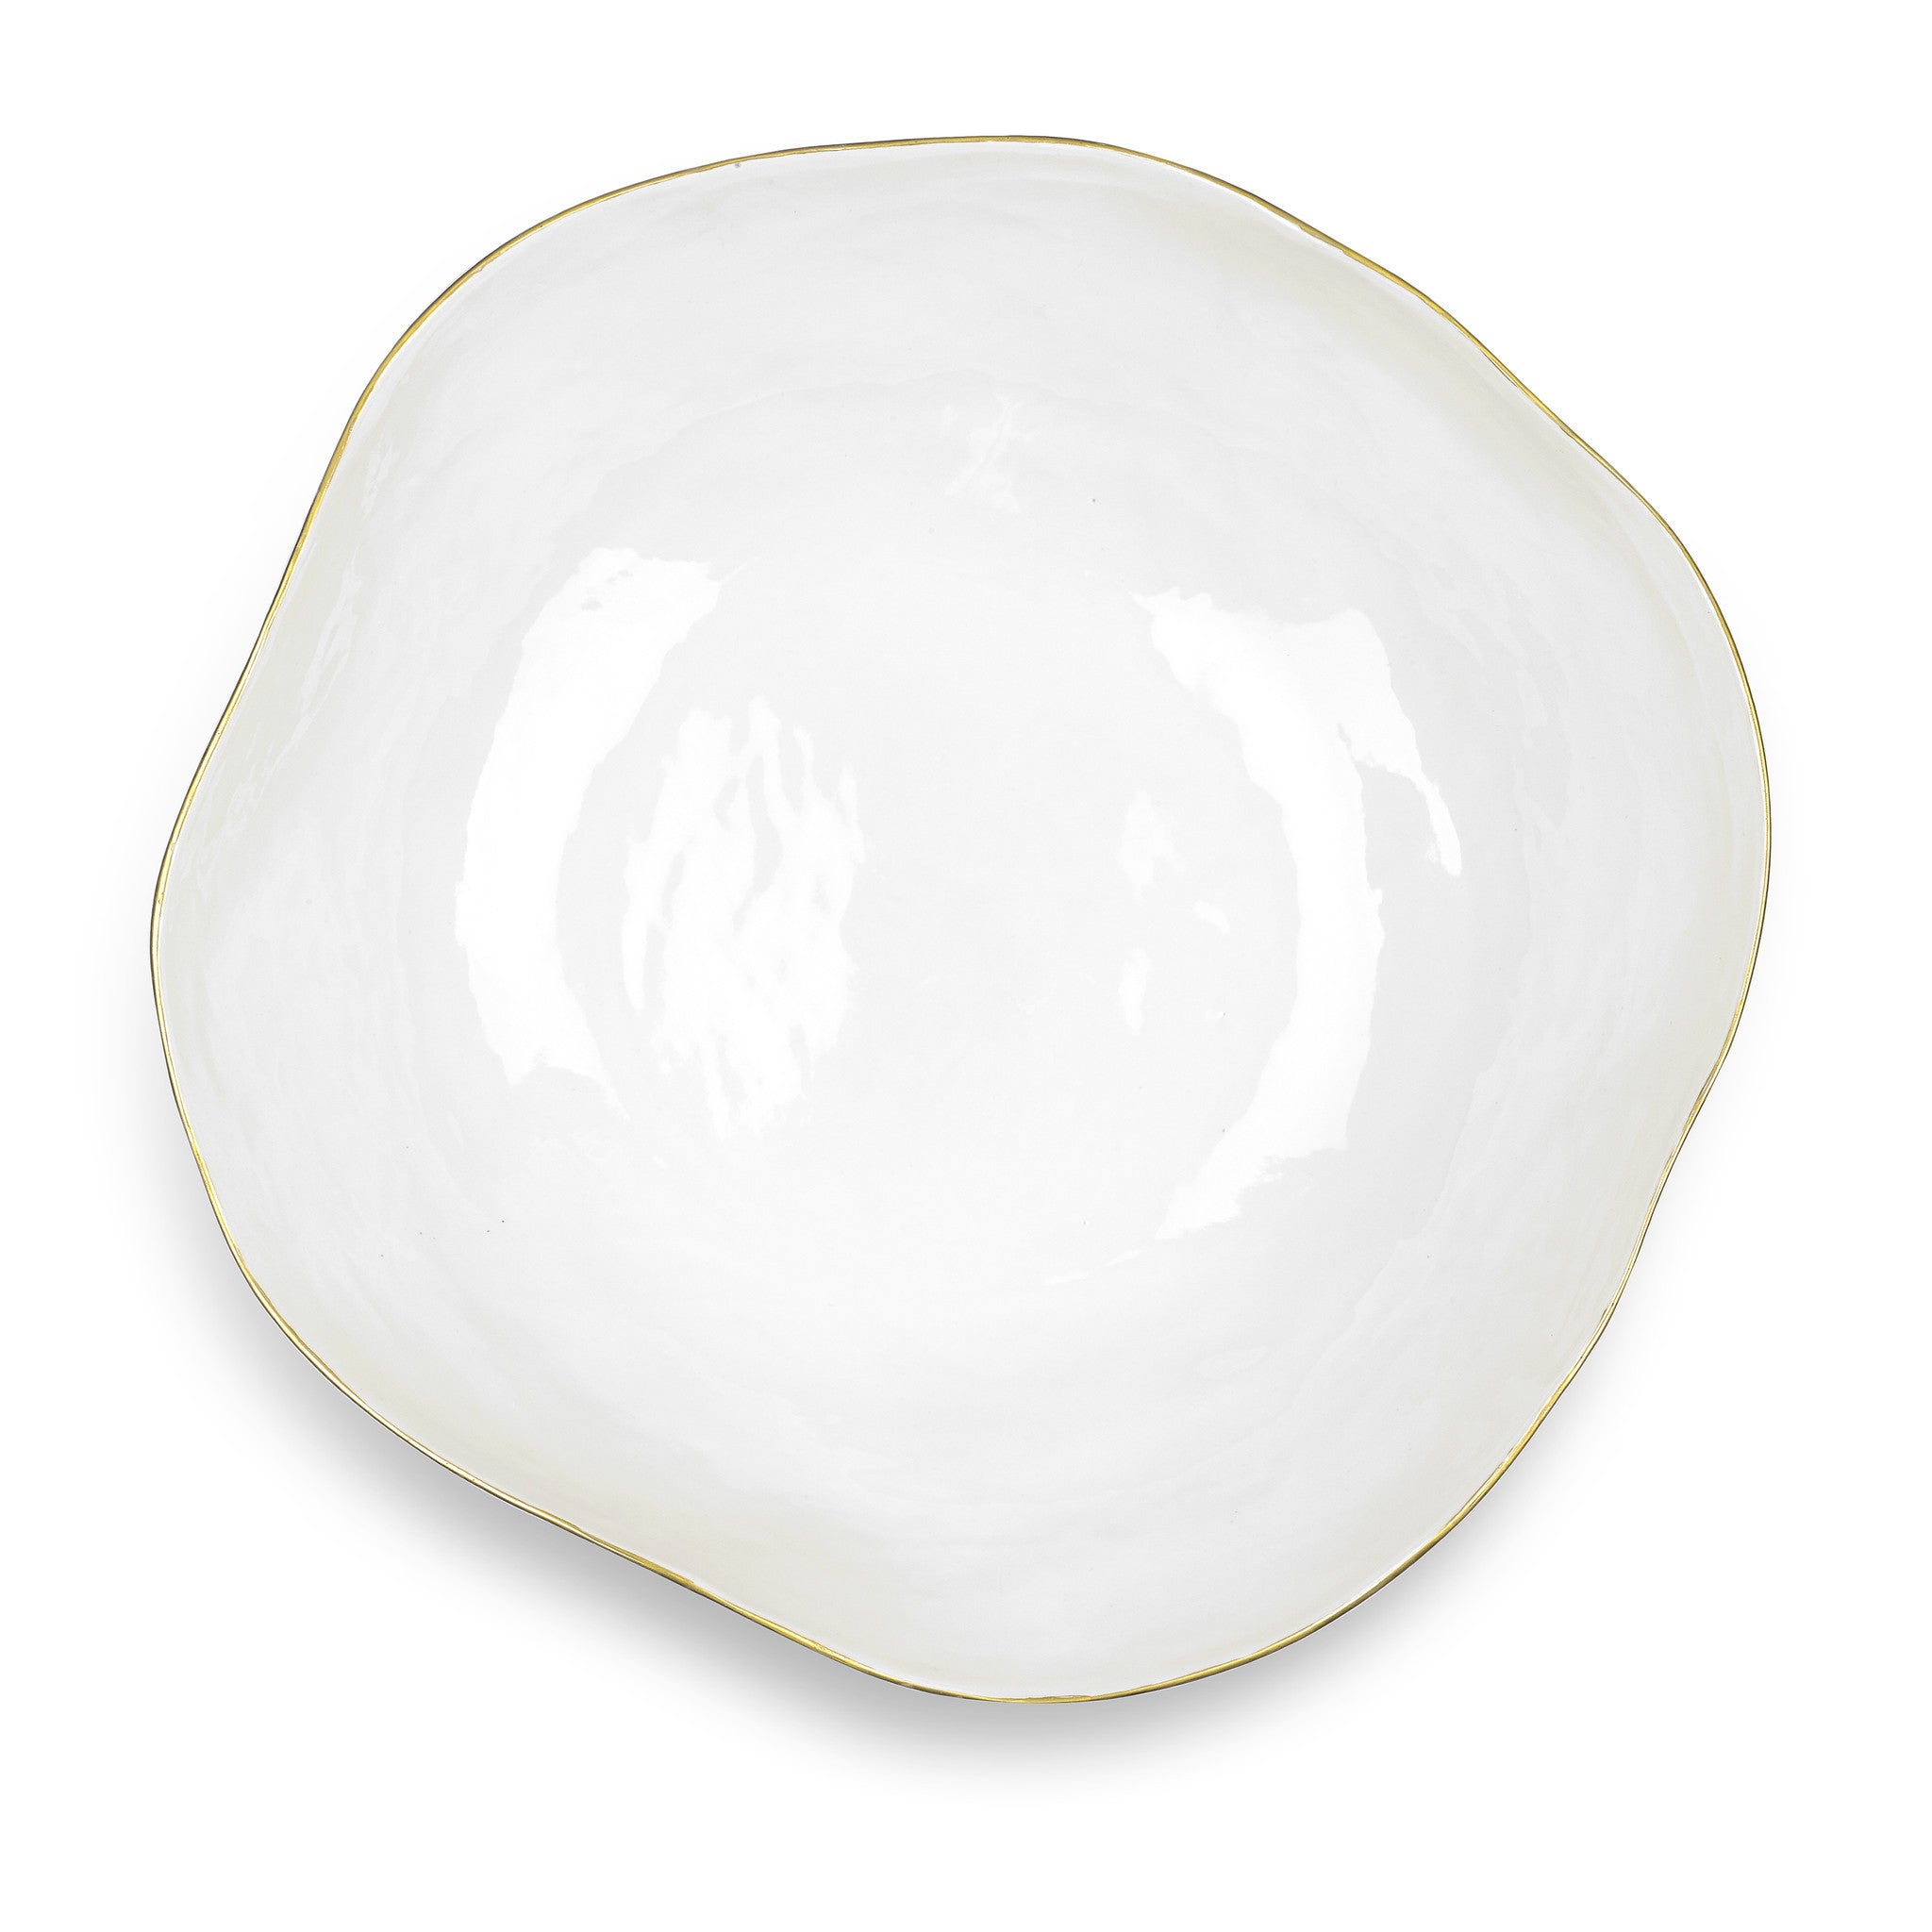 Summerill & Bishop Handmade 43cm Porcelain Extra Large Salad Bowl with Gold Rim